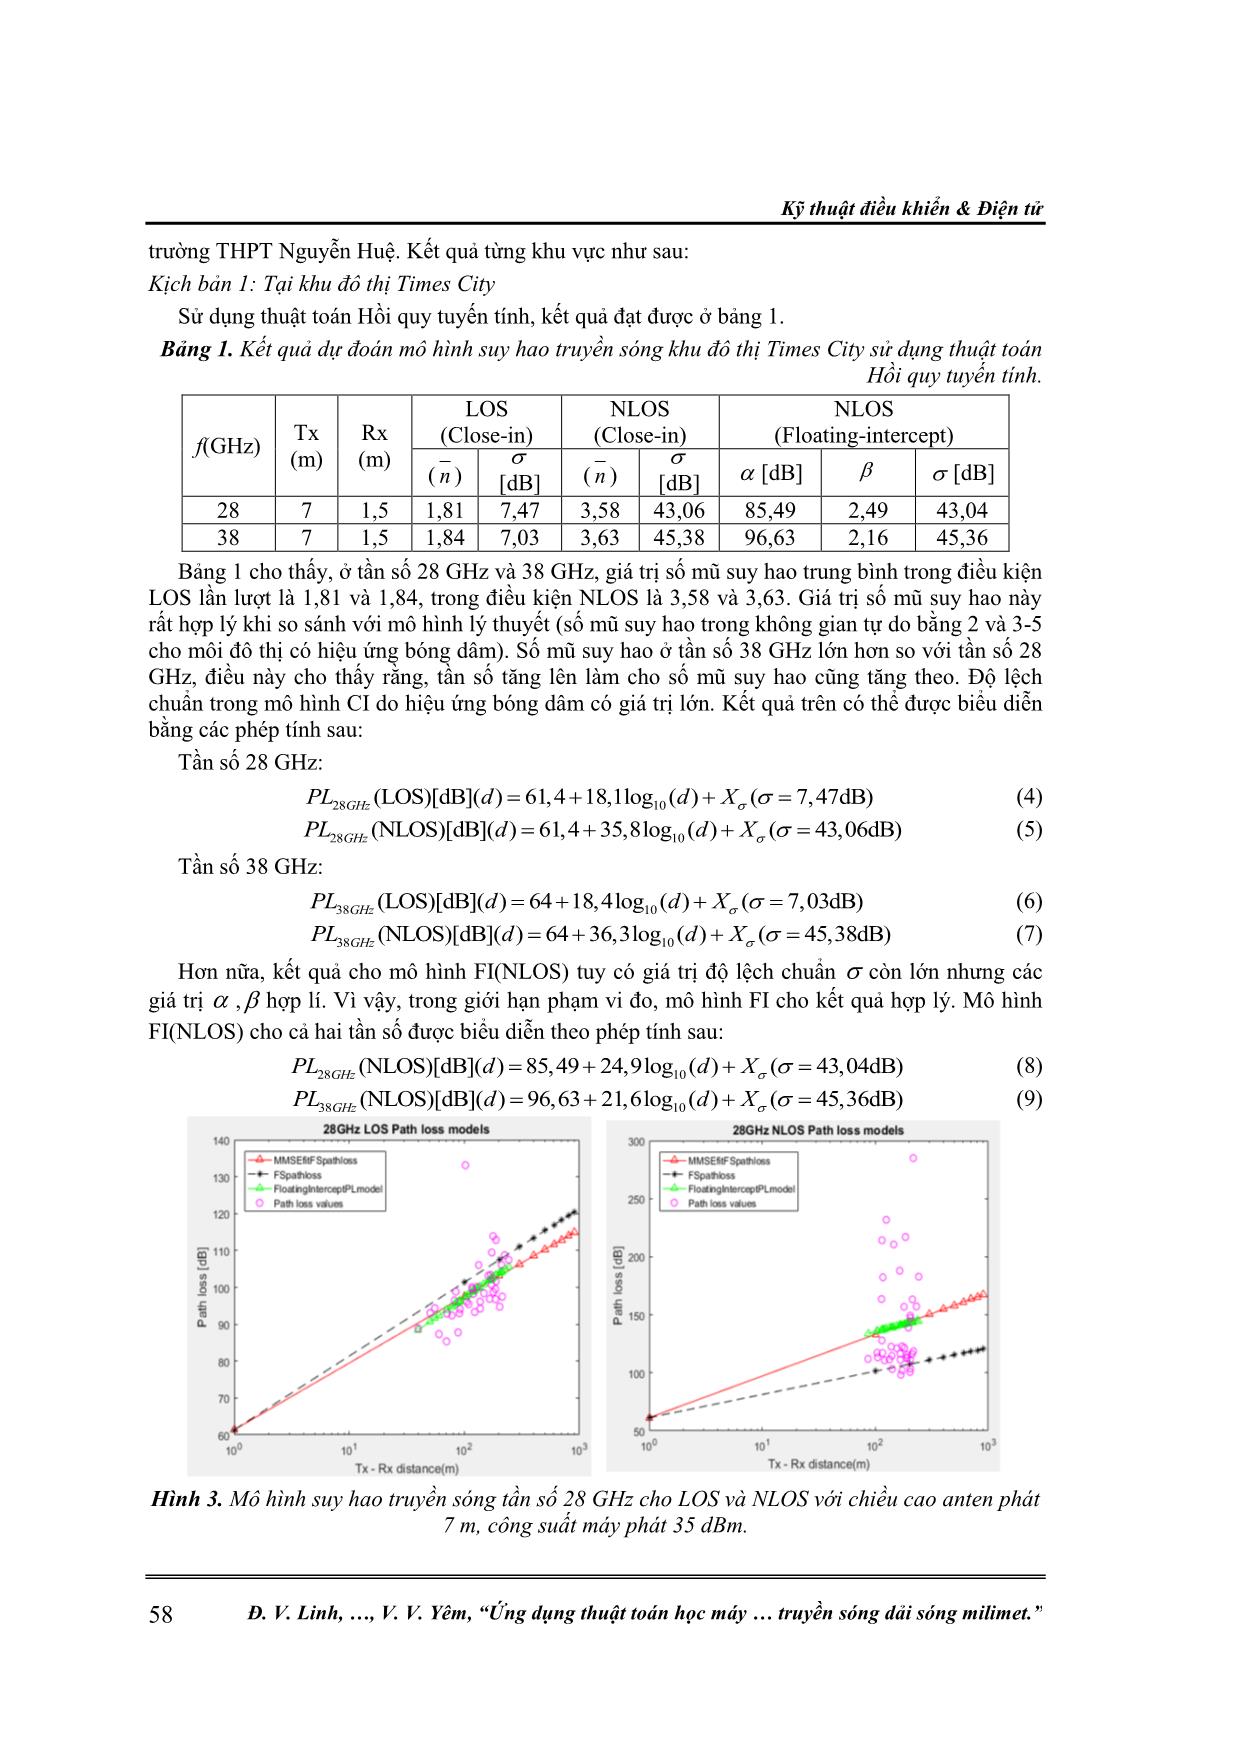 Ứng dụng thuật toán học máy trong ước lượng mô hình suy hao truyền sóng dải sóng milimet trang 5